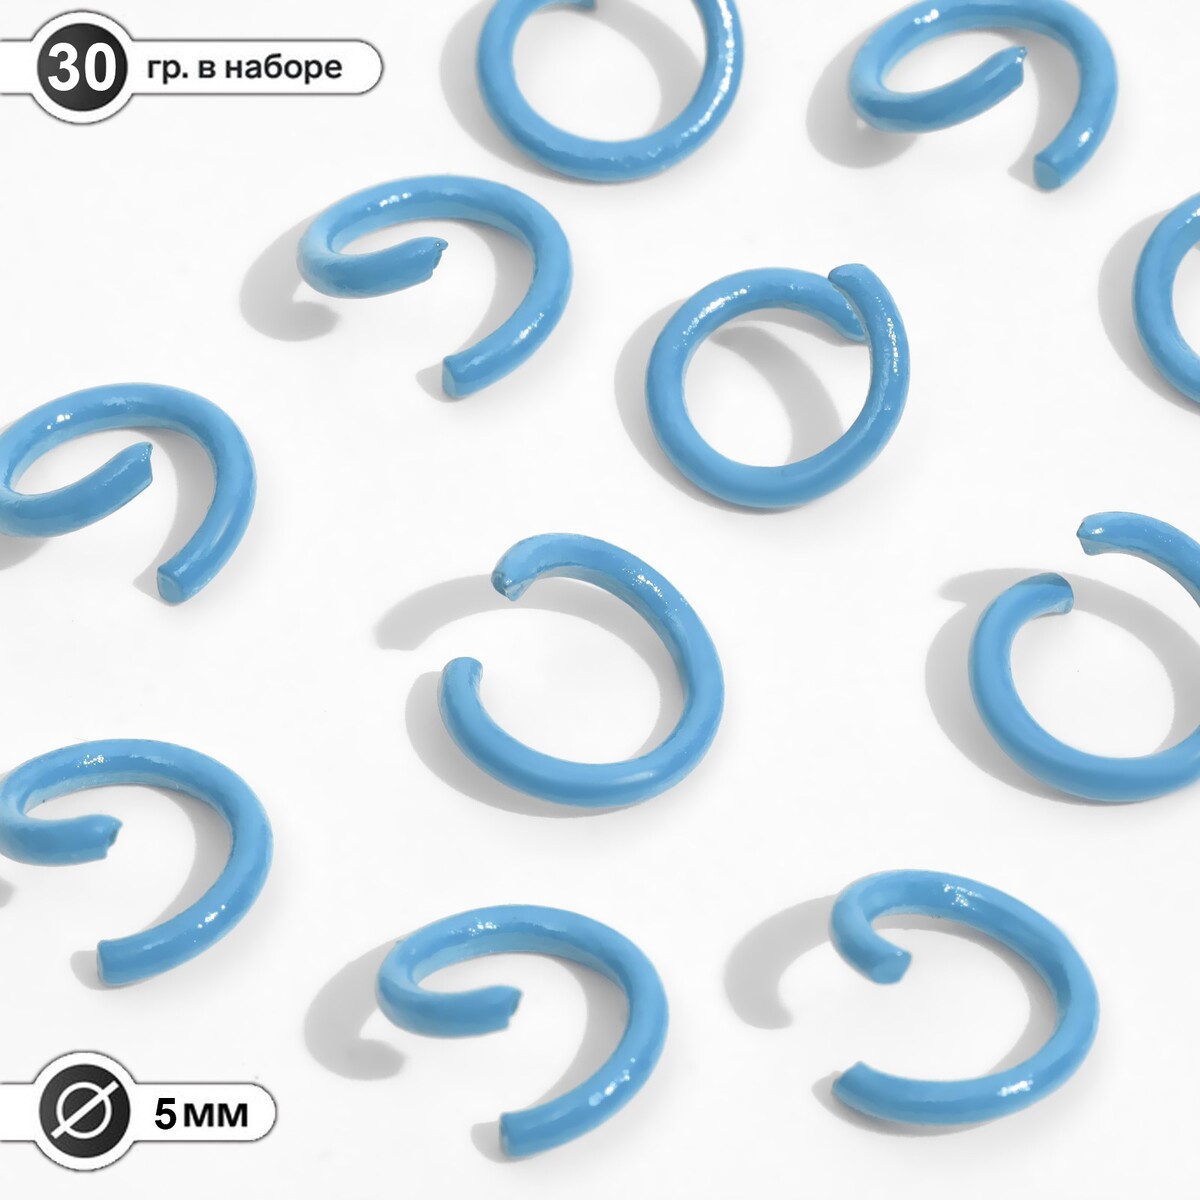 Кольцо соединительное, разъемное d=5 мм, (набор 30 г), цвет голубой эспандер кольцо 10 кг h180701 10lb голубой